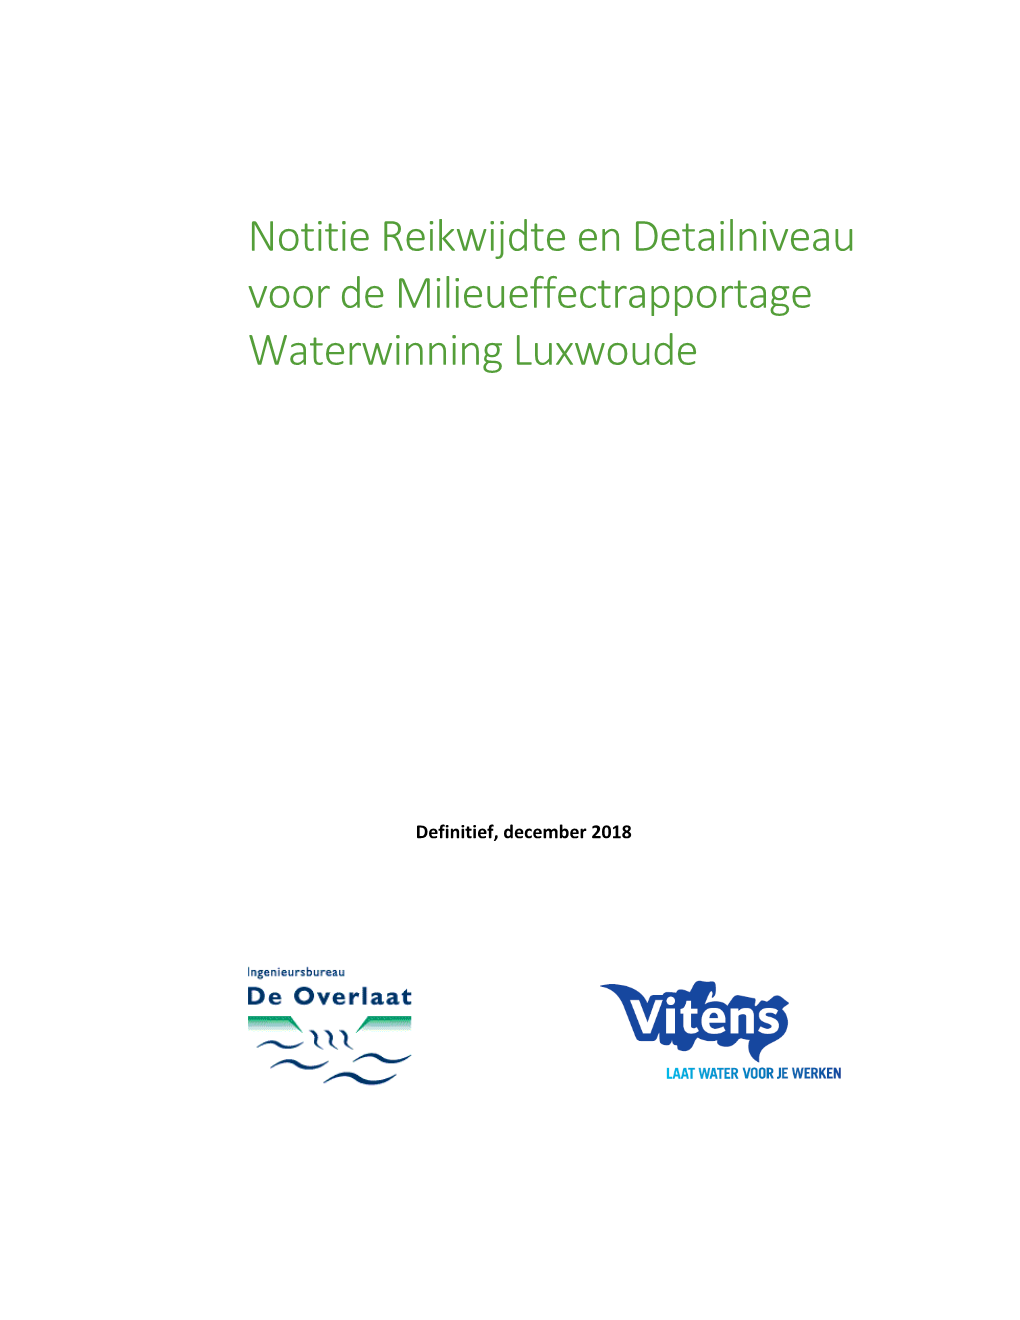 Notitie Reikwijdte En Detailniveau Voor De Milieueffectrapportage Waterwinning Luxwoude